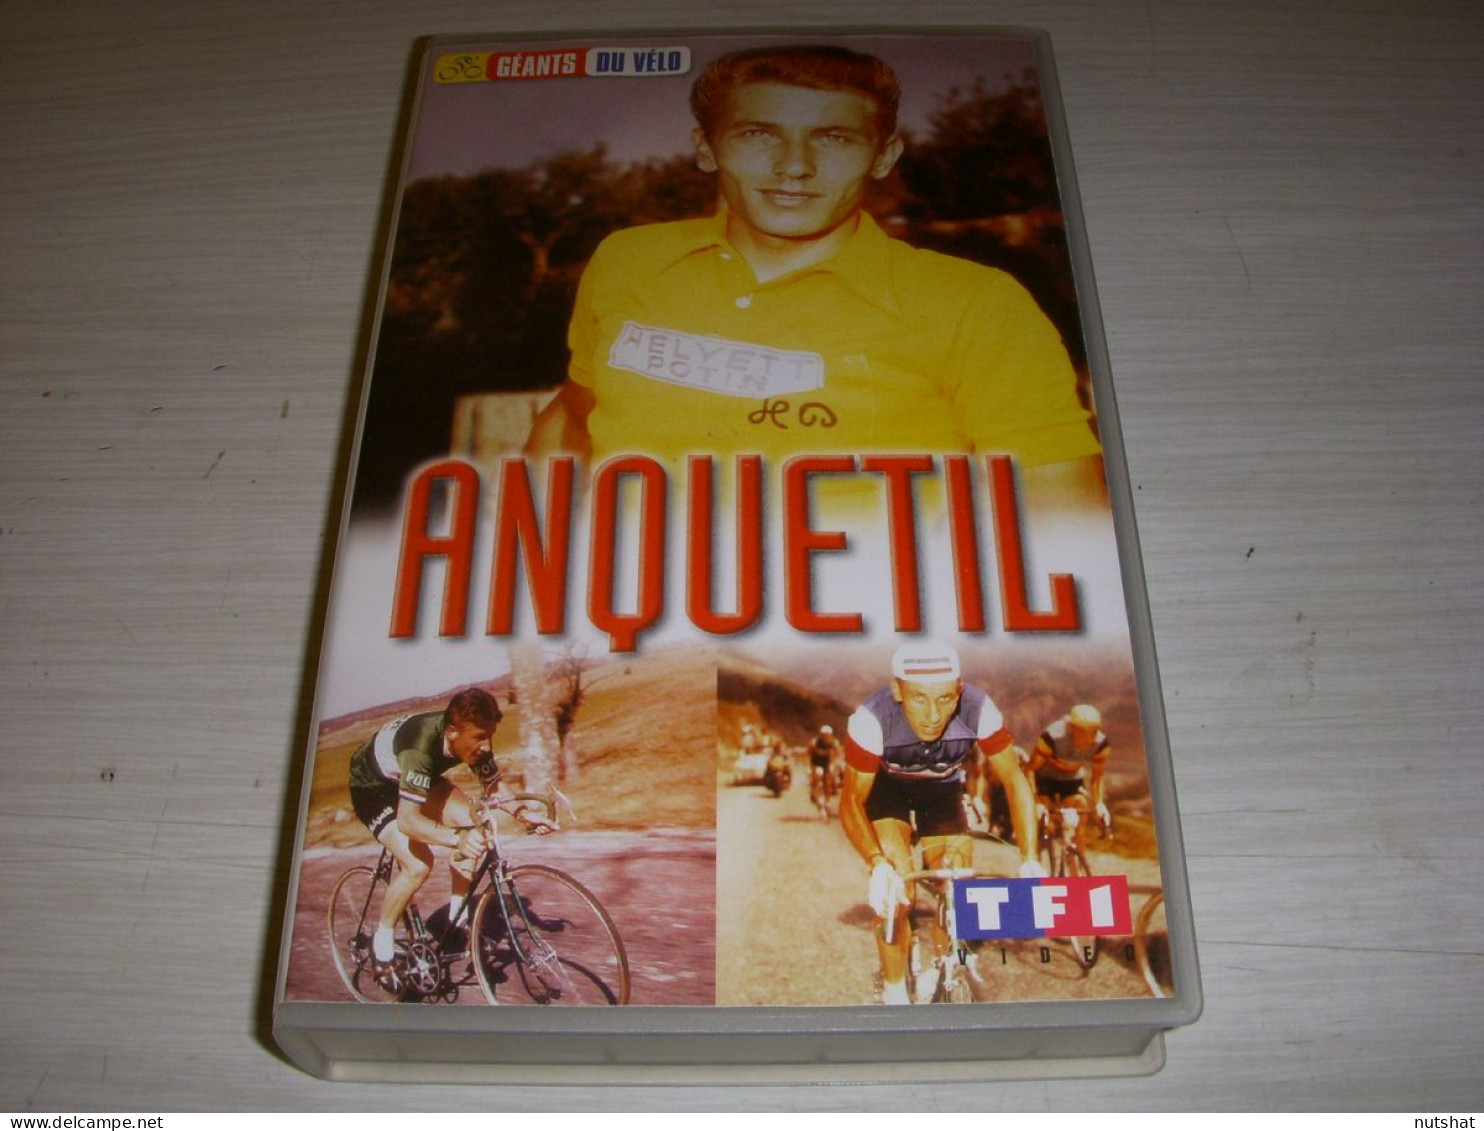 CYCLISME CASSETTE VHS Les GEANTS Du VELO Jacques ANQUETIL 75mn - Sport